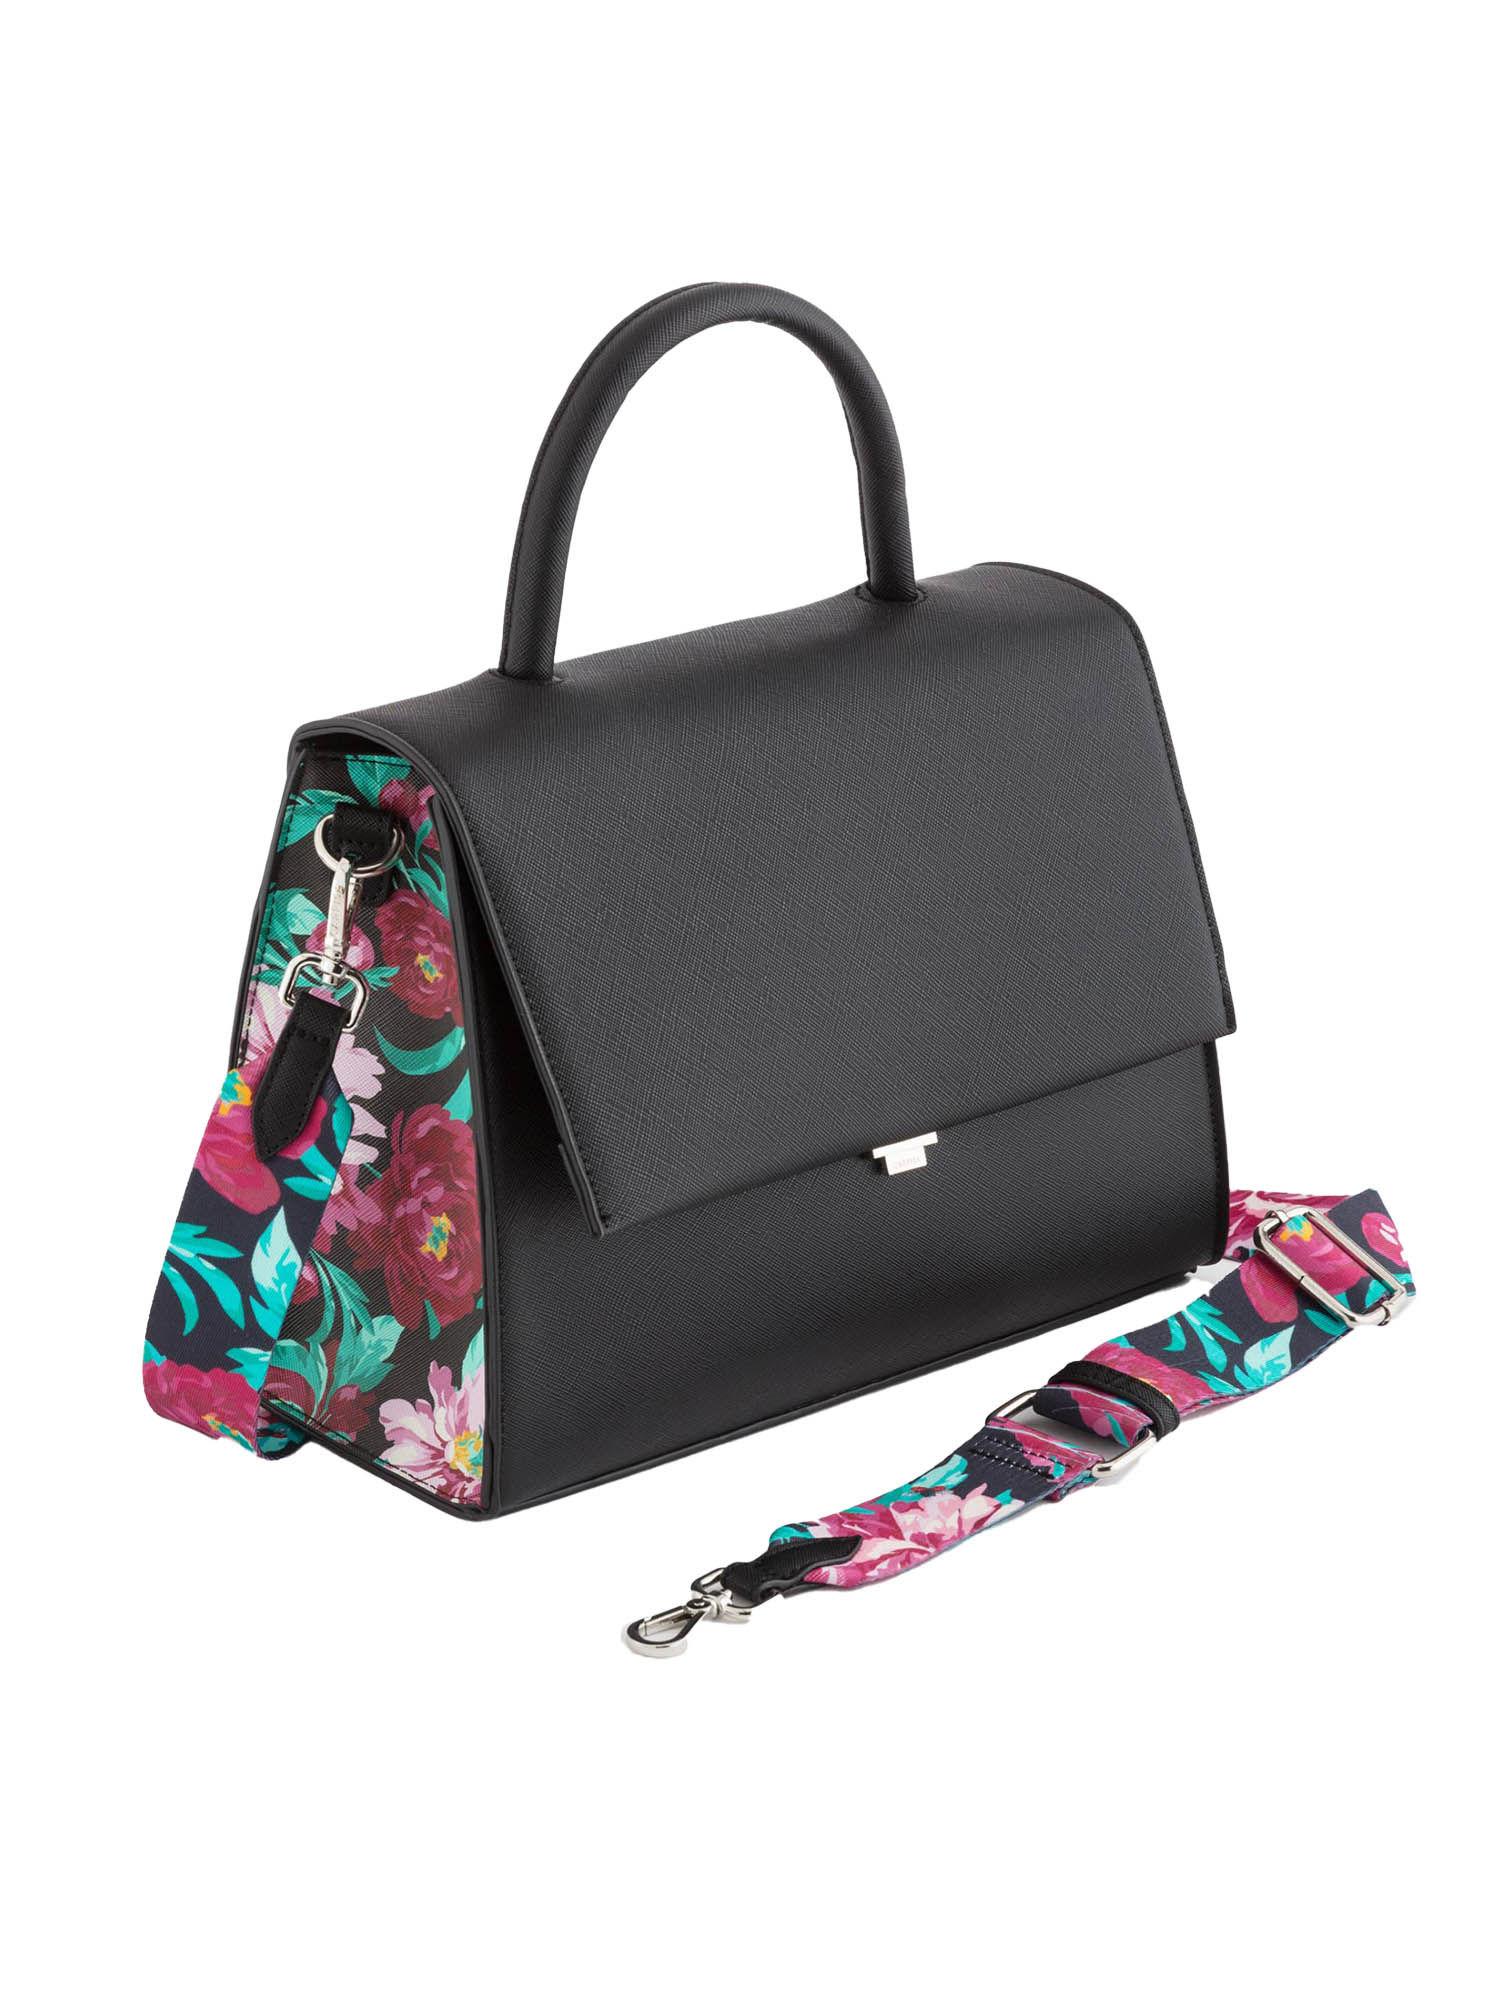 stylish top handle shoulder bag - multi-color